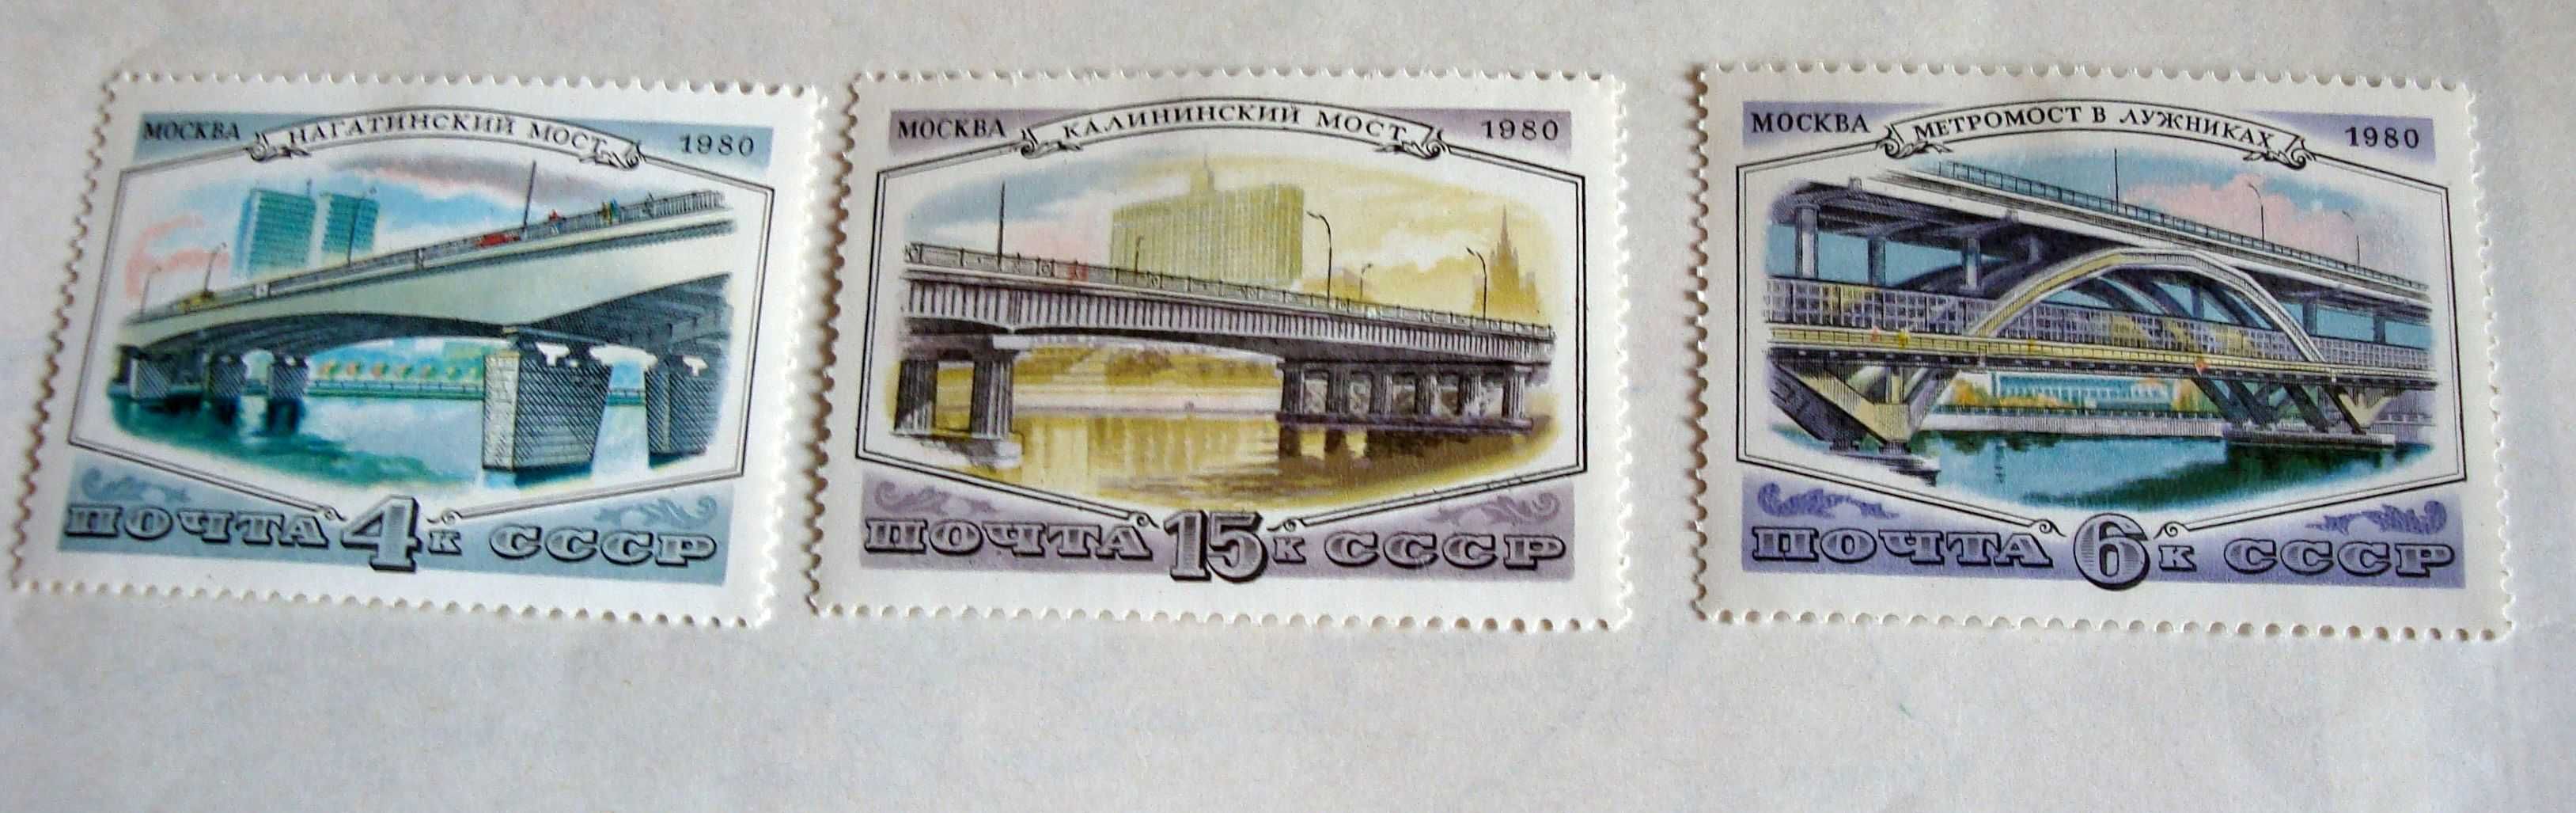 3 почтовые марки – серия  «МОСТЫ М» сов 1980